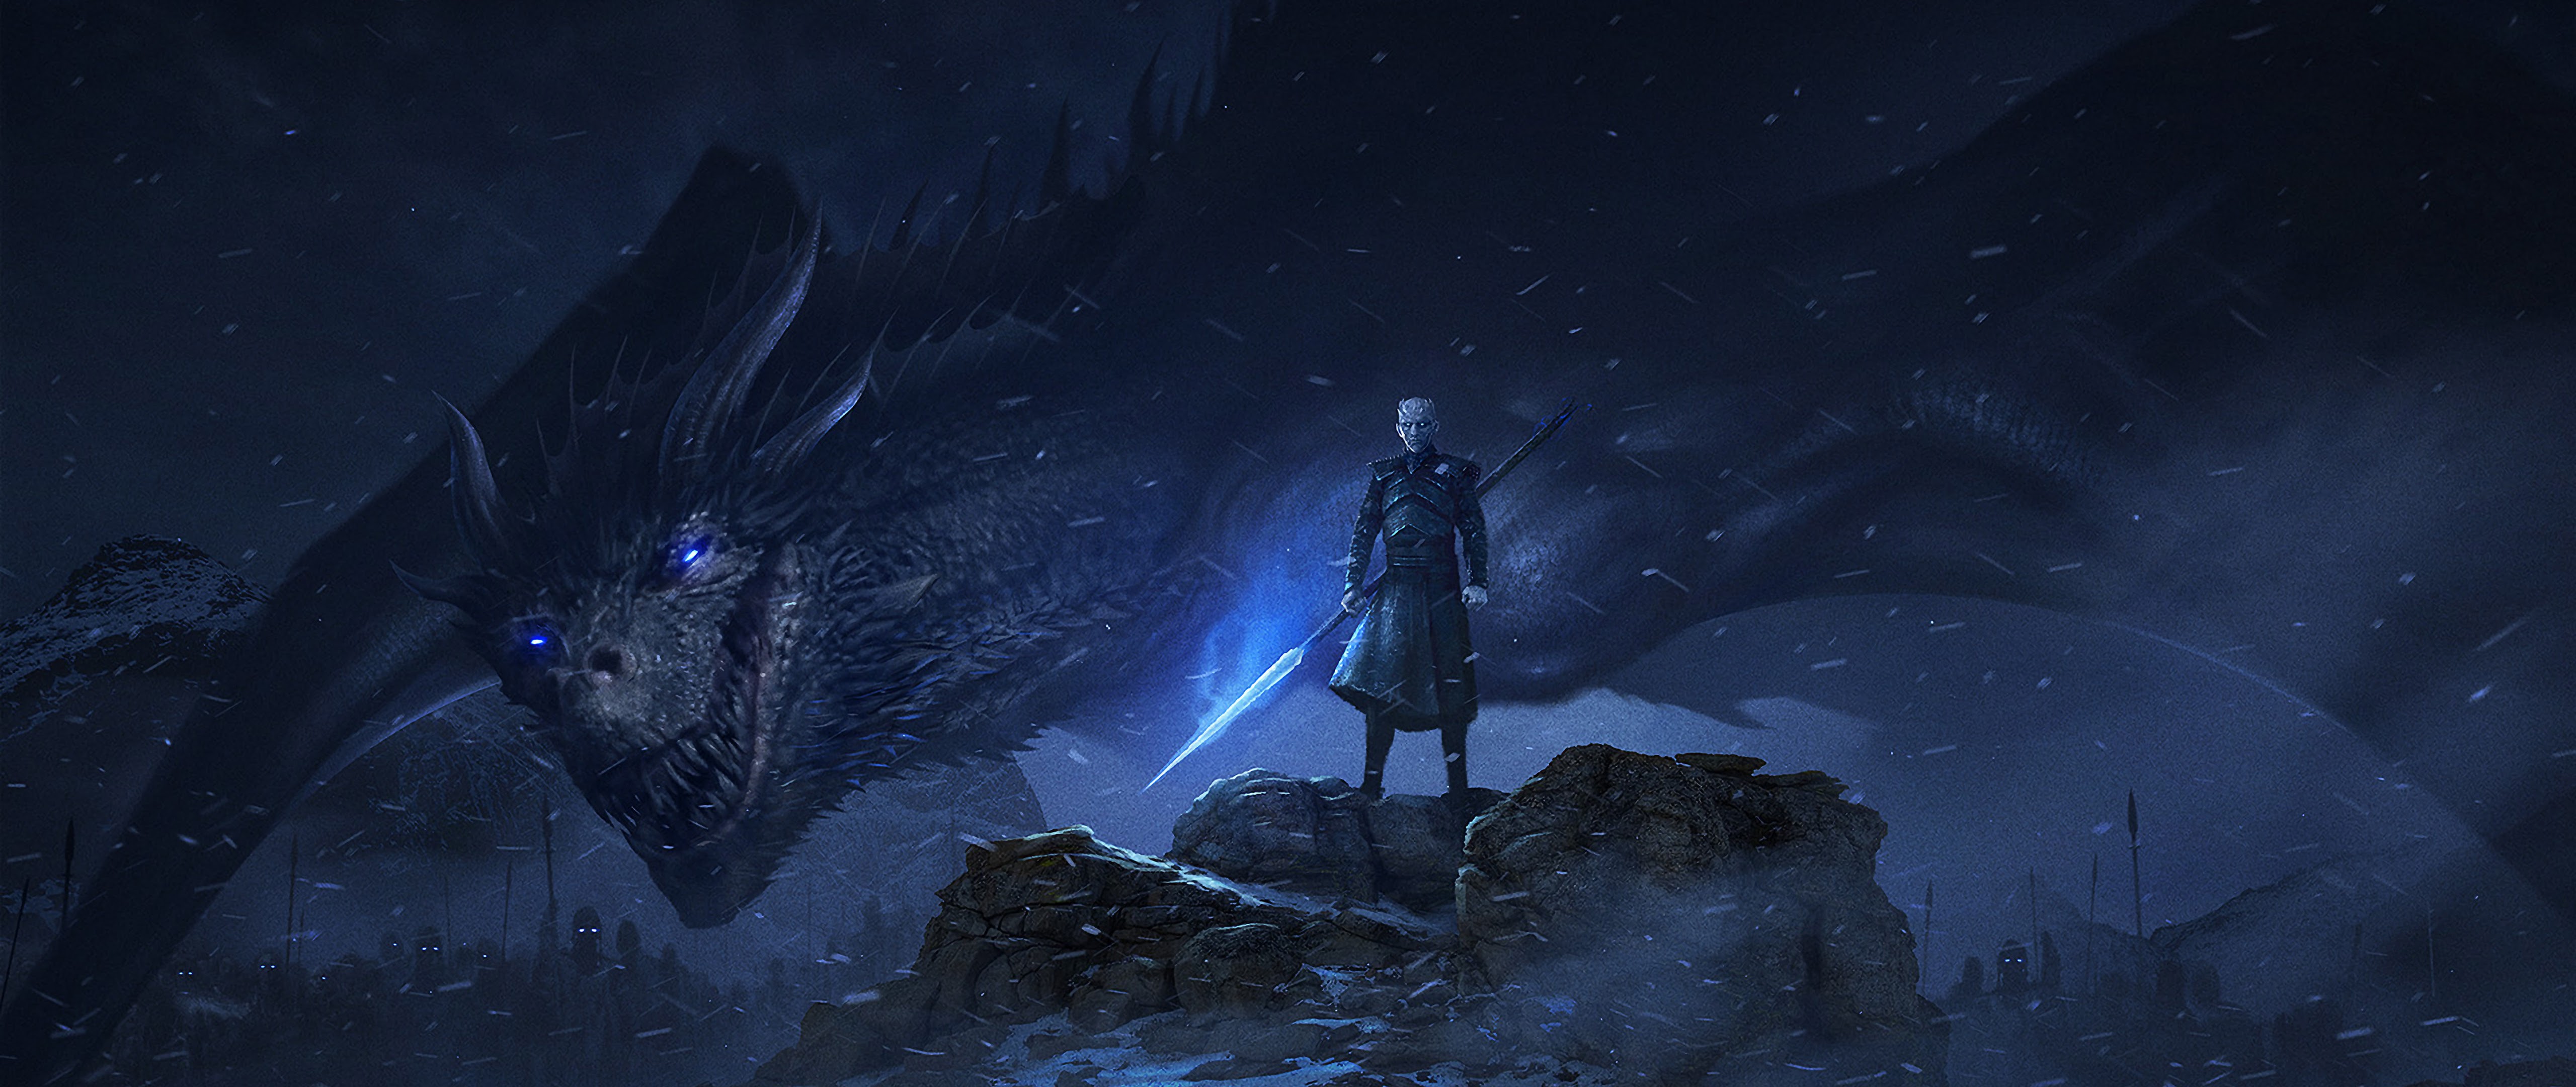 Hình nền Night King Dragon 4K: Sức mạnh của Night King và rồng sẽ hiển hiện trên màn hình của bạn nhờ hình nền 4K chất lượng cao này. Bạn sẽ được trải nghiệm những khoảnh khắc kỳ diệu và đầy phấn khích khi xem màn hình của mình.